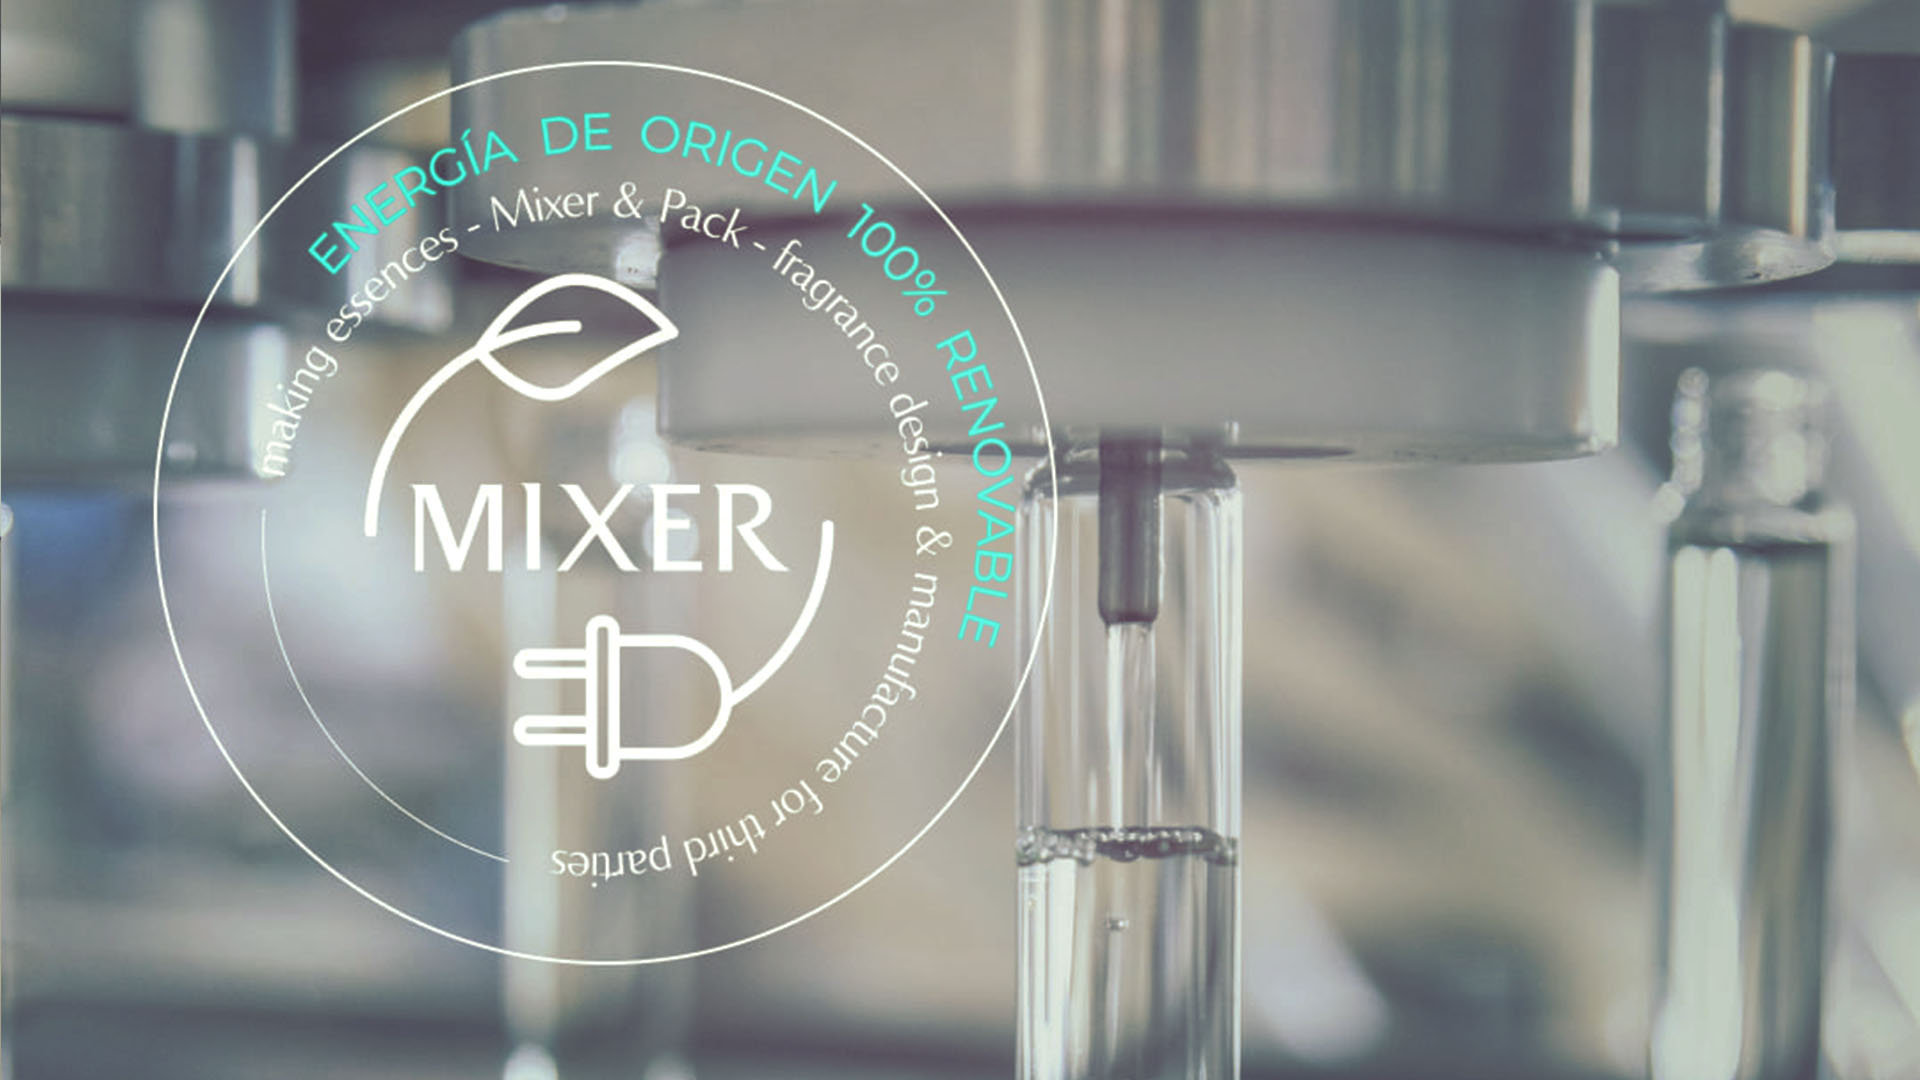 Mixer & Pack apuesta por la energía 100% renovable en la producción y diseño de perfumería